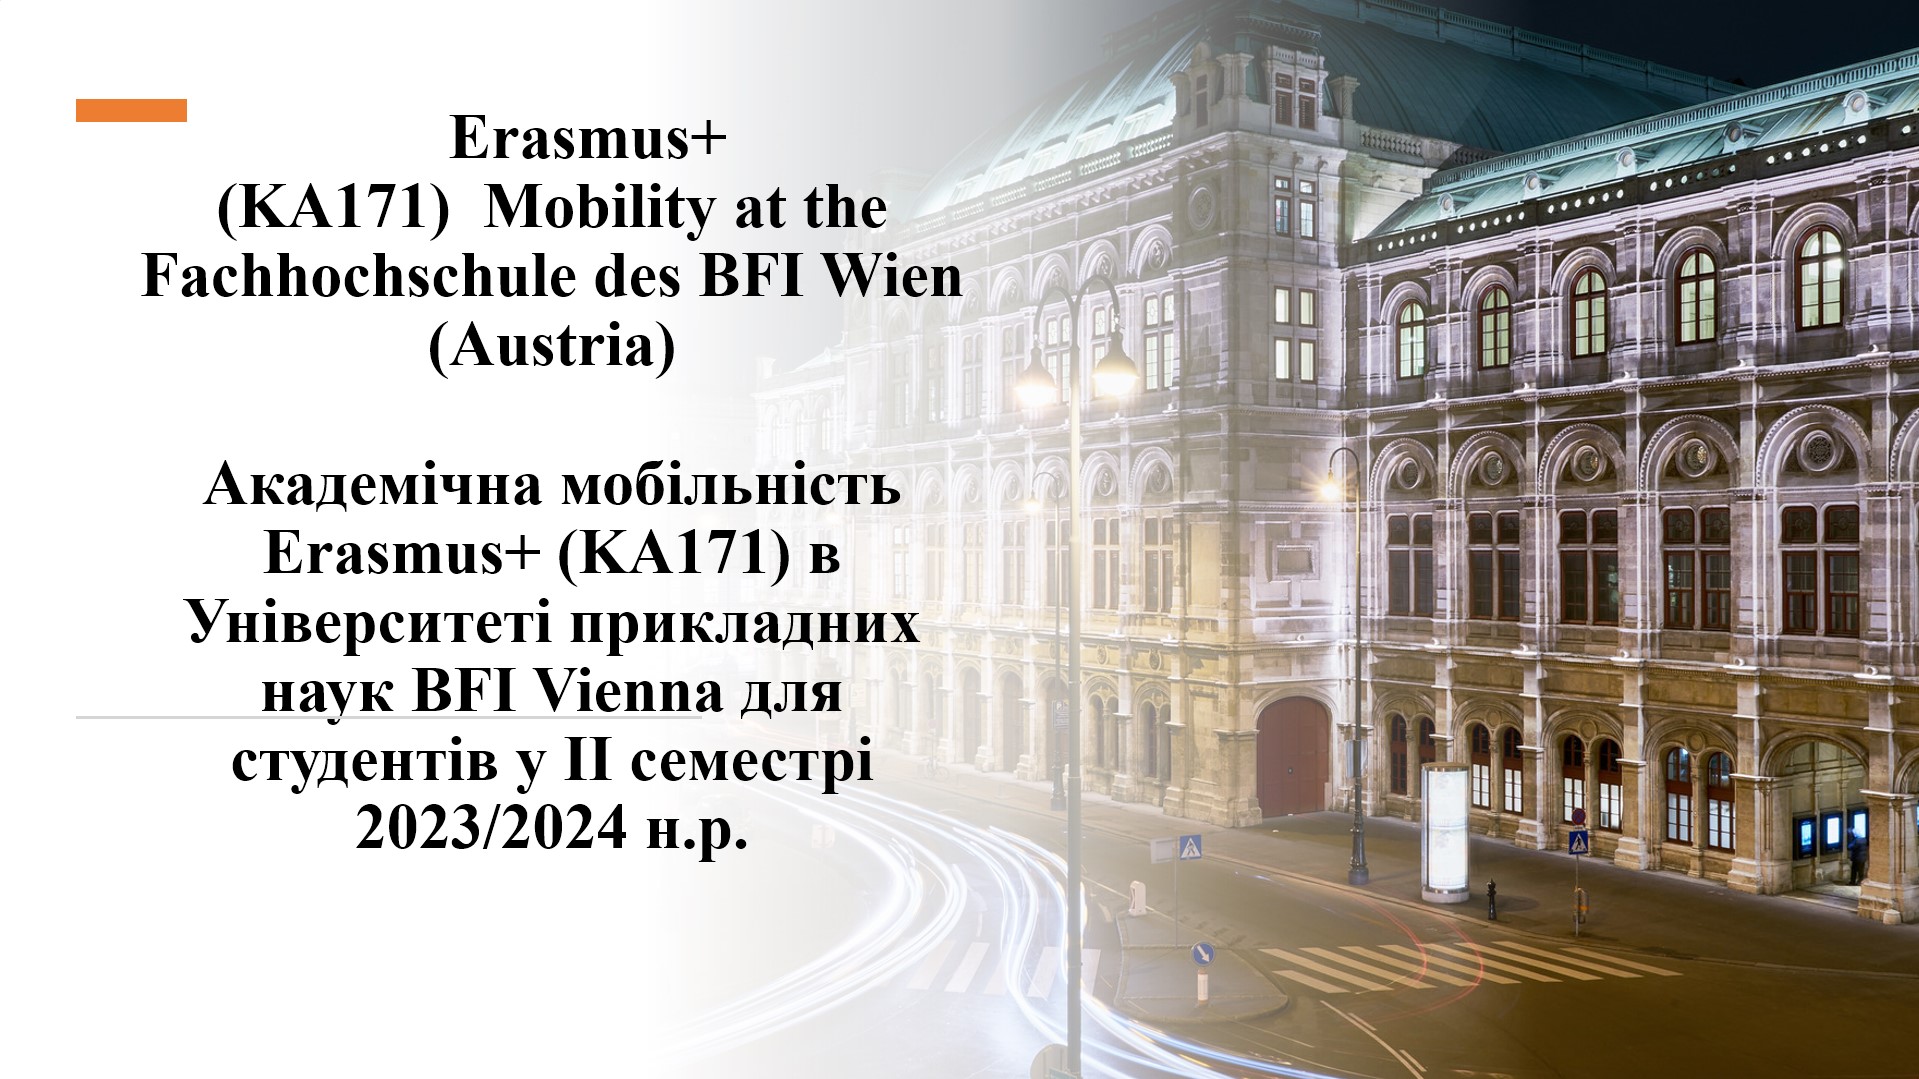 Університет прикладних наук BFI Vienna запрошує студентів політехніки взяти участь у програмі академічної мобільності Erasmus+